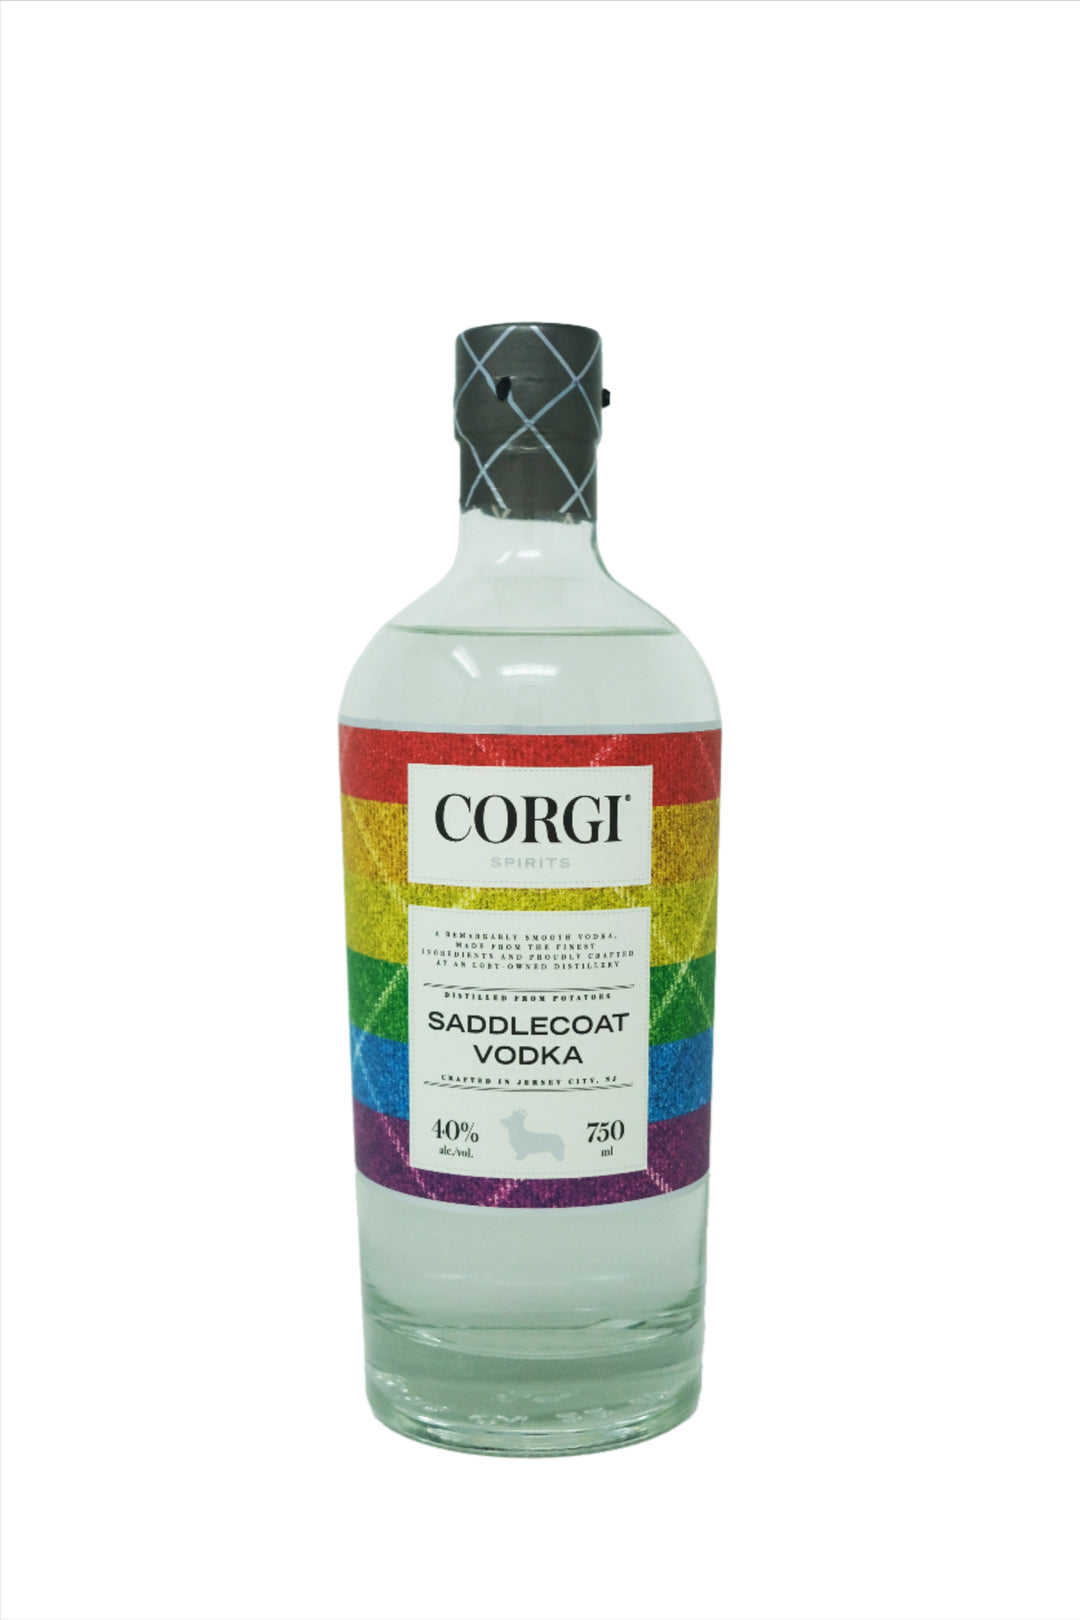 Corgi Saddlecoat Vodka 750ml